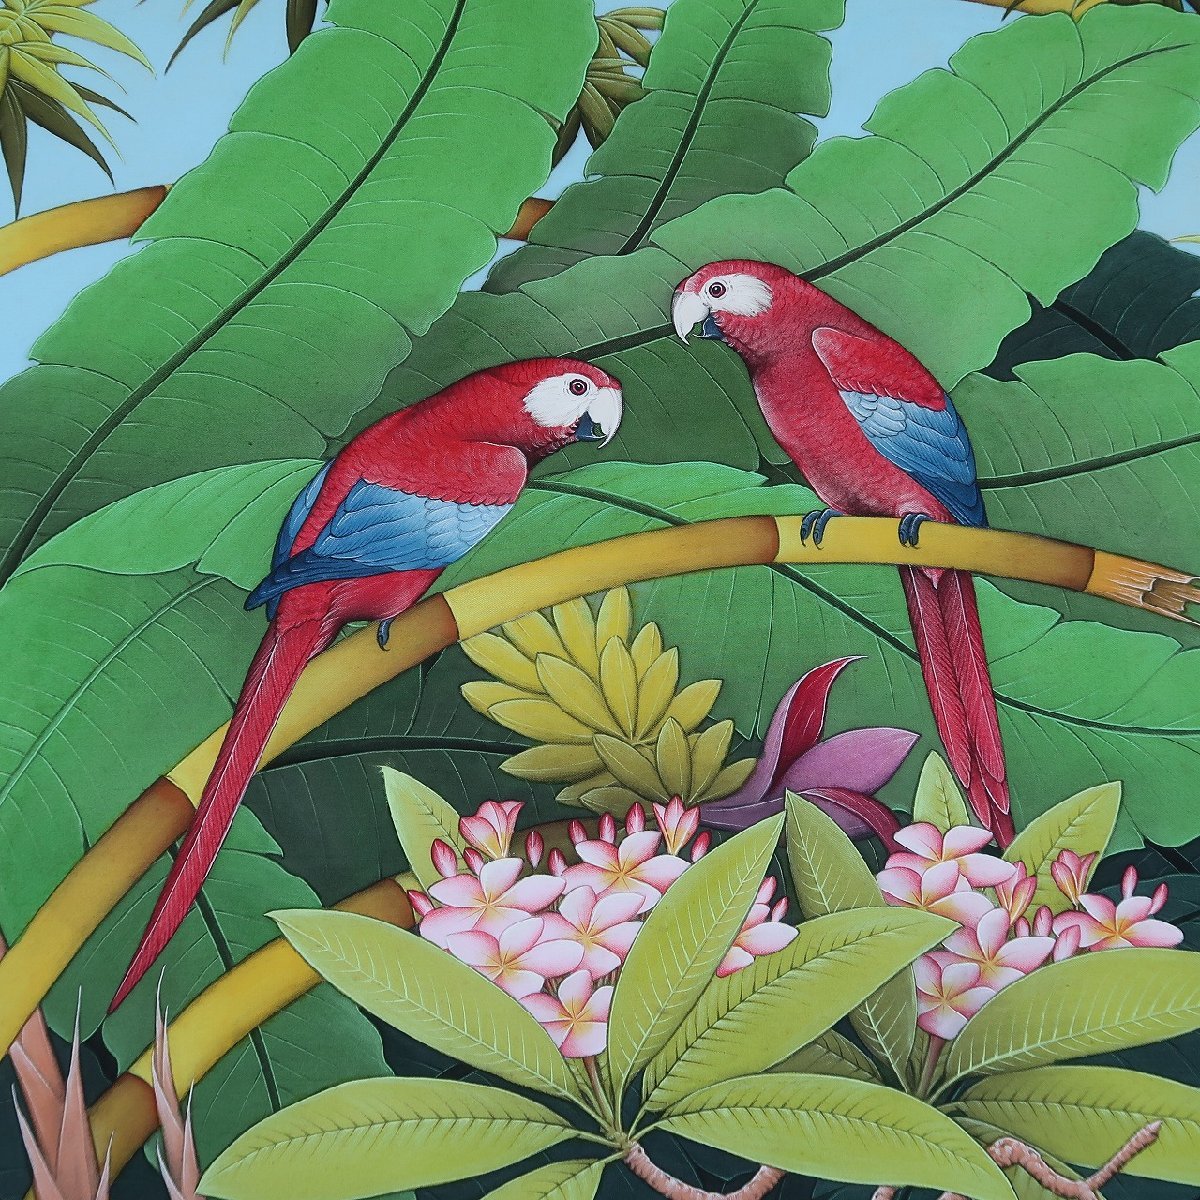 ２匹のコンゴウインコの絵 プンゴセカンスタイル 100X80 カラフルオウム 鳥の絵 ハワイアン バリ絵画 W.SURITA作 YSA-240454_画像5